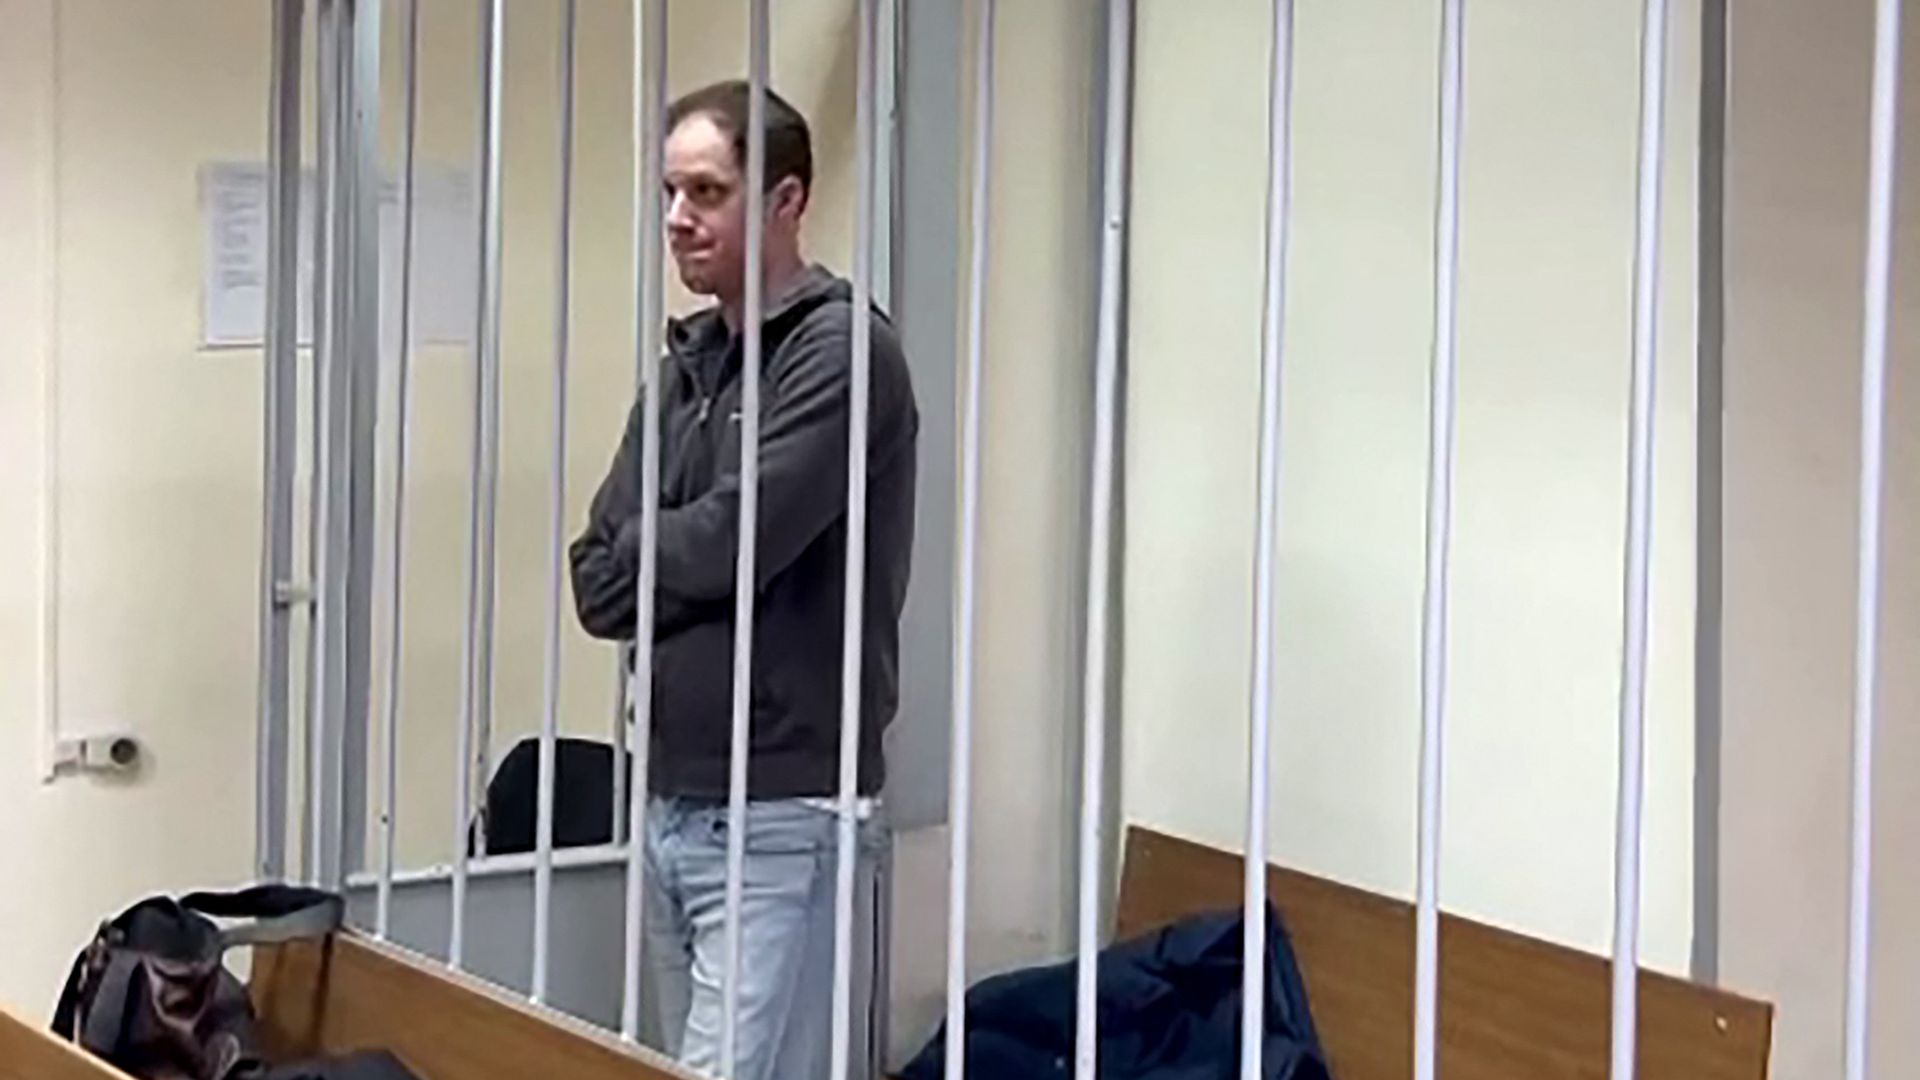 moskau: us-journalist evan gershkovich bleibt in untersuchungshaft